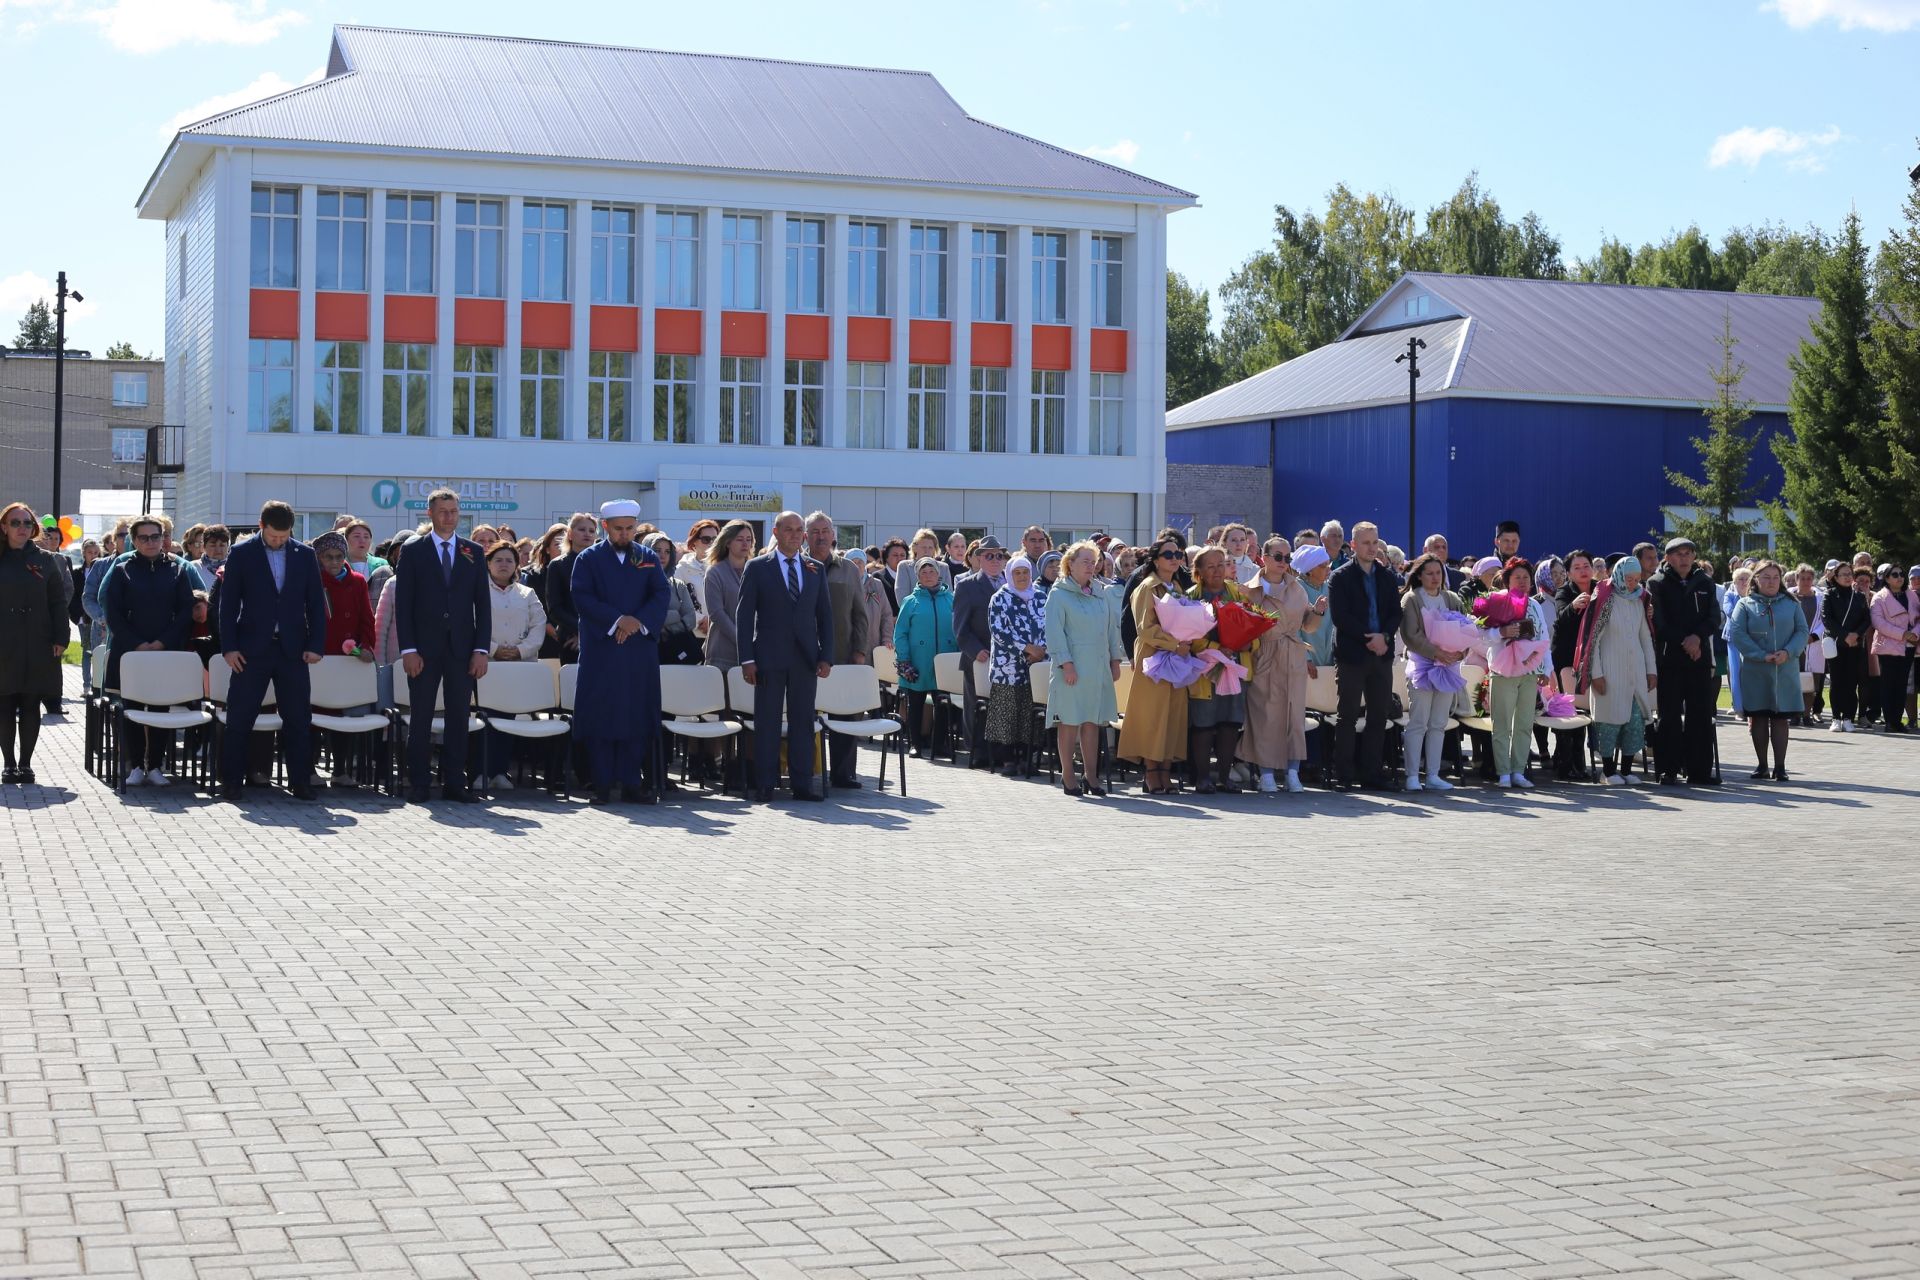 Поздравляем вас с праздником – Днем республики Татарстан